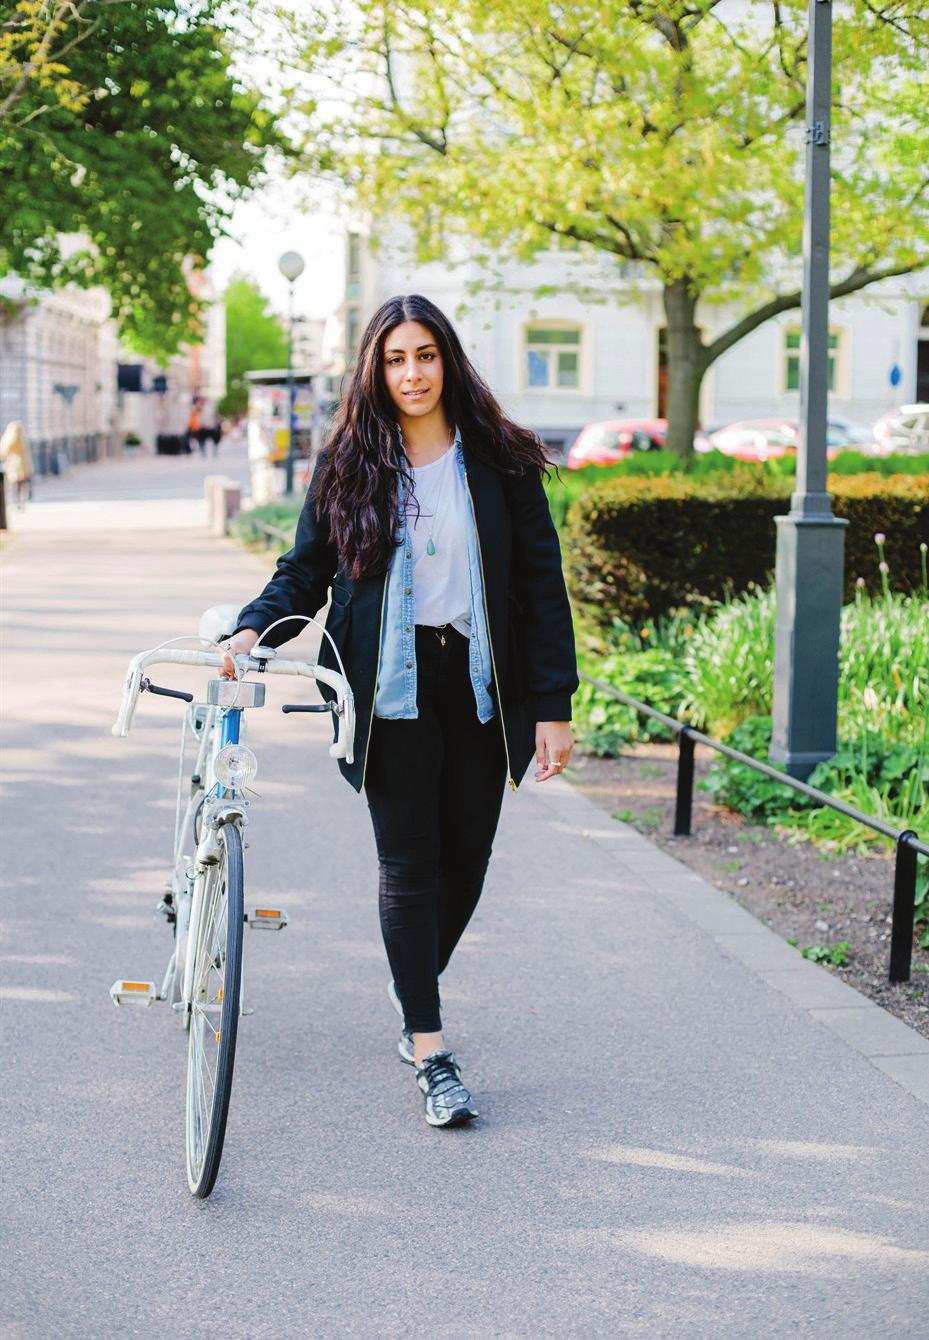 19% 2030 16% 2013 Andelen cykelresor i Skåne ska öka till 19% av alla resor år 2030.